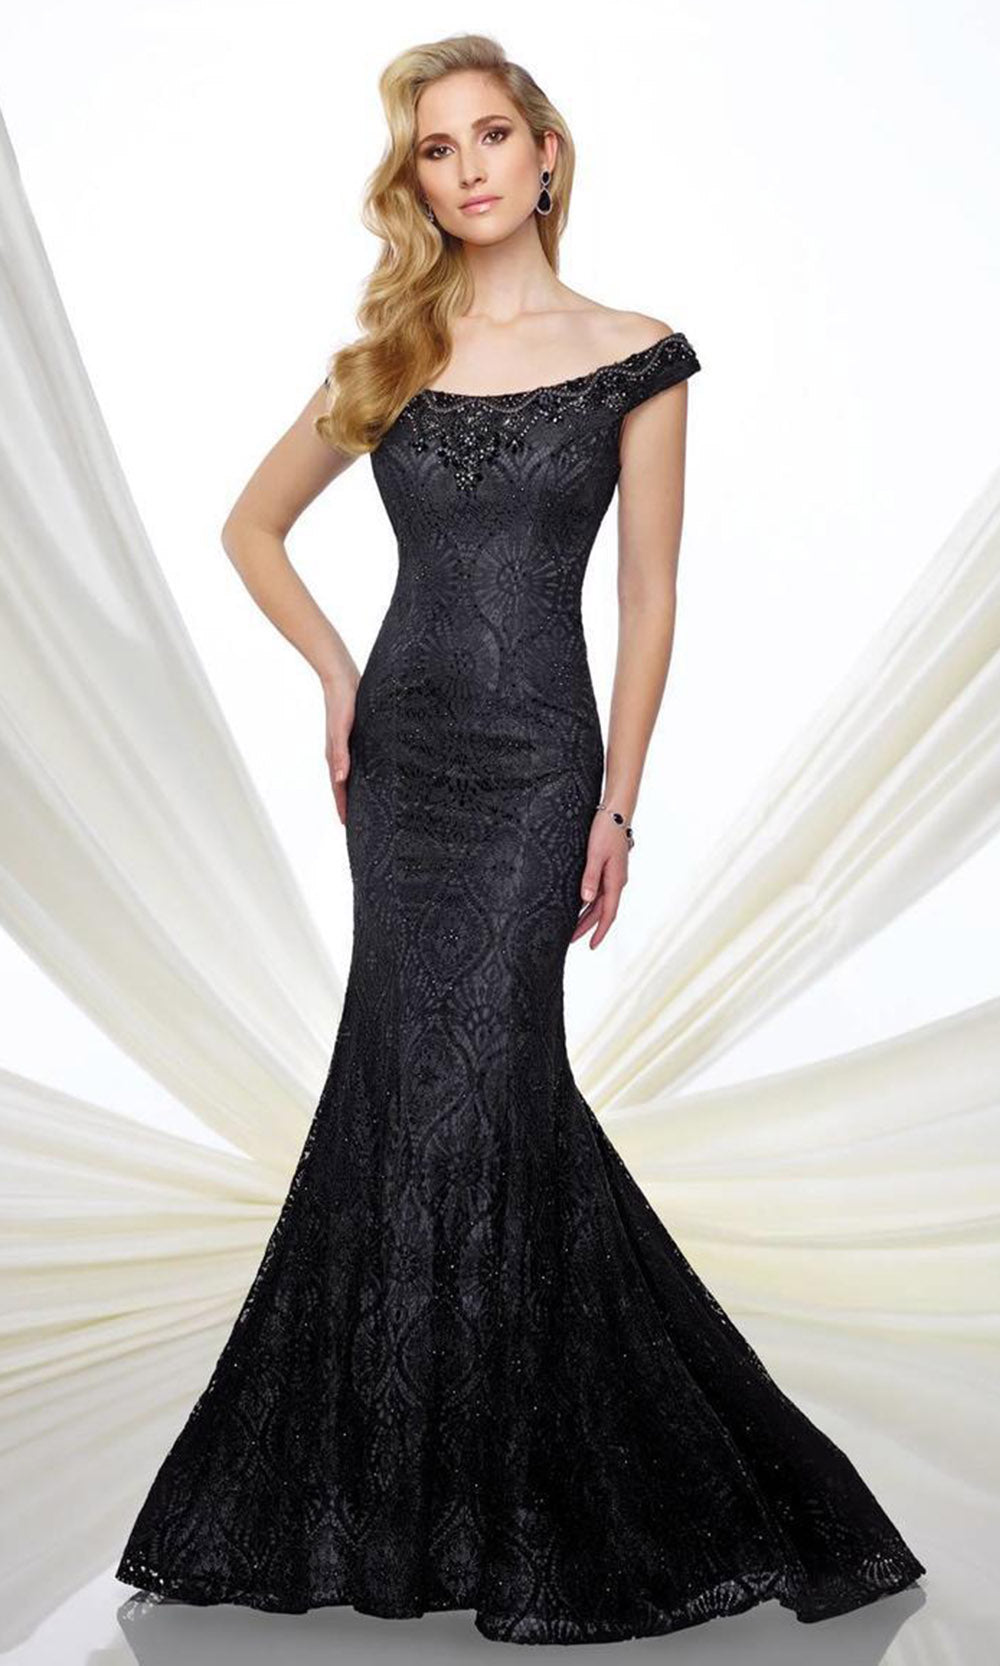 Mon Cheri 216975 Off-Shoulder Lace Mermaid Dress- 1 pc Mink In Size 10 Available CCSALE 10 / Mink